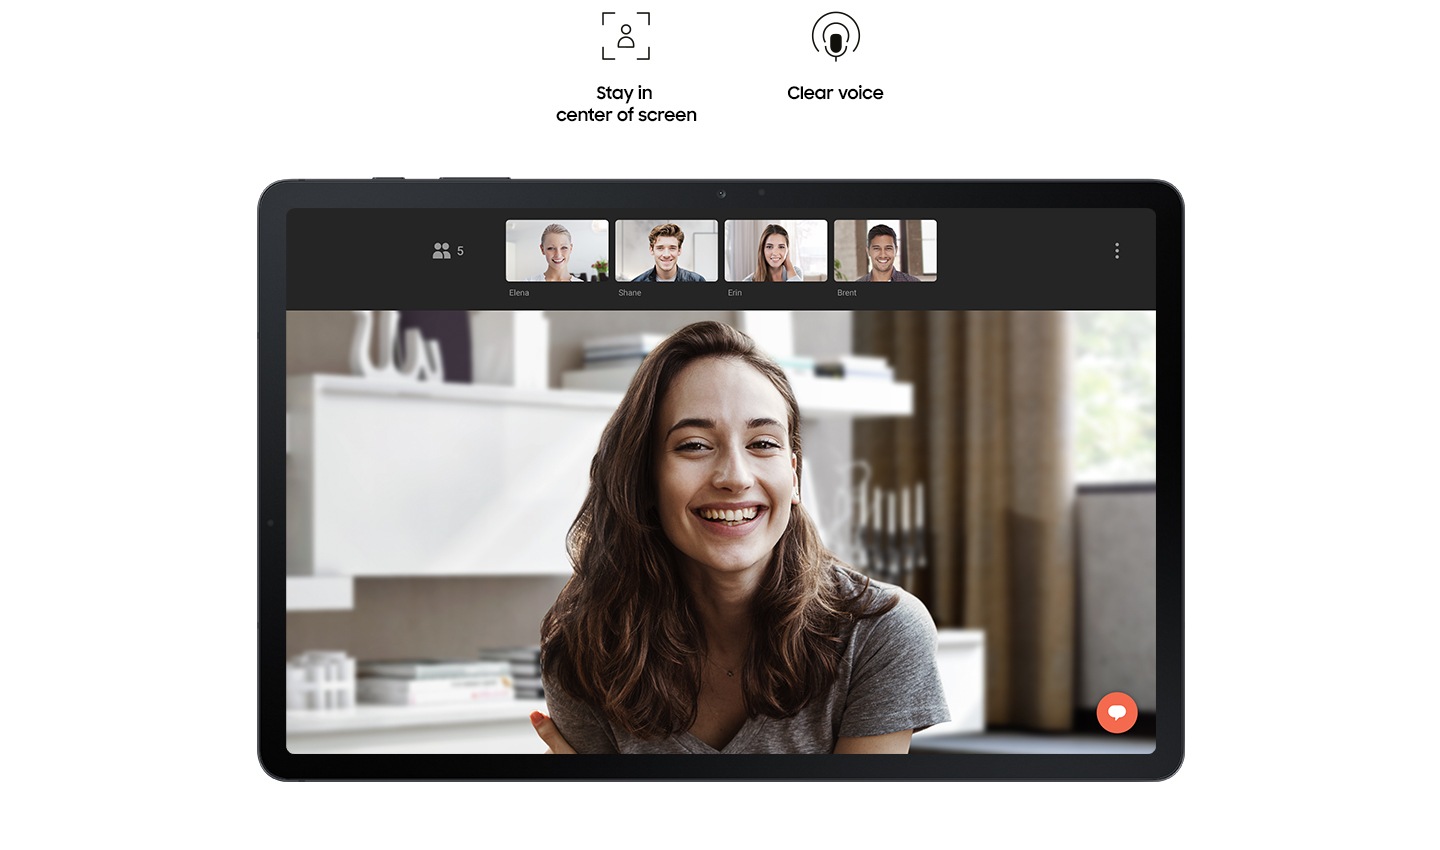 Se ve una Galaxy Tab S7 FE 5G desde alante con un chat de vídeo en pantalla entre una mujer y cuatro amigos. Los iconos dicen "Mantente en el centro de la imagen", "muestra más a tu alrededor" y "voz clara". 